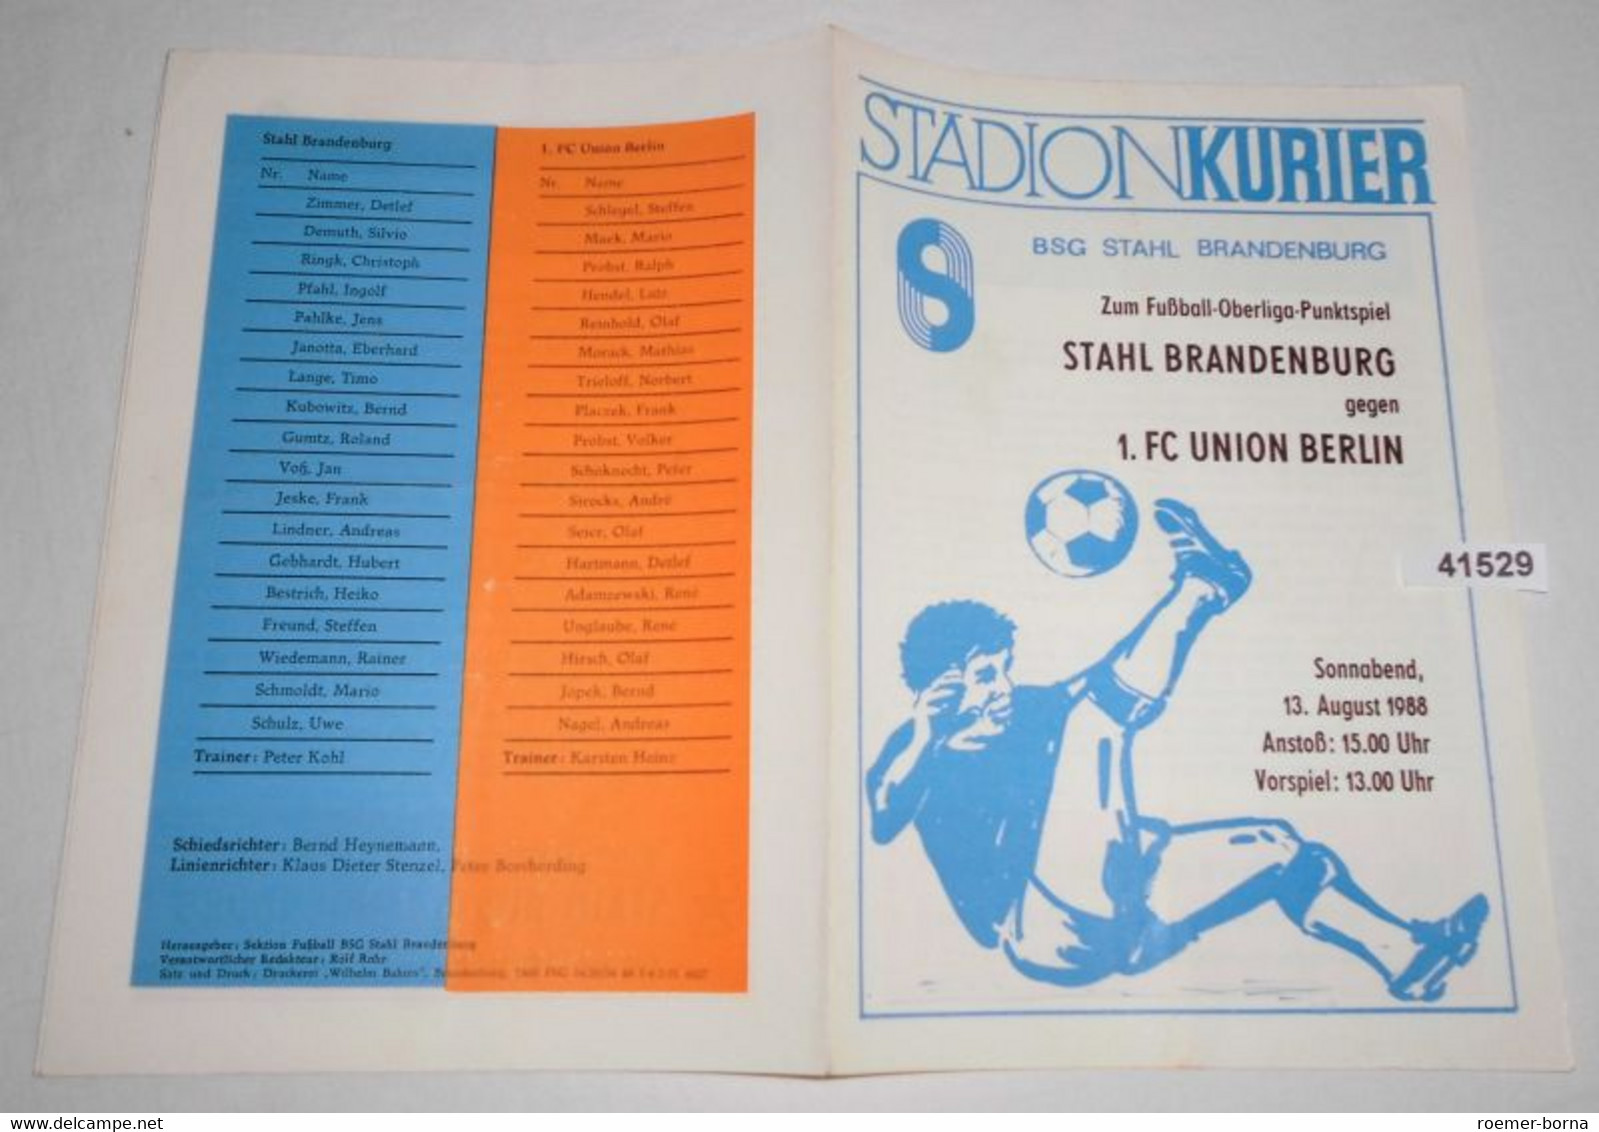 Stadion Kurier Programm Fußball-Oberliga Punktspiel 1988  Stahl Brandenburg - 1. FC Union Berlin - Sports